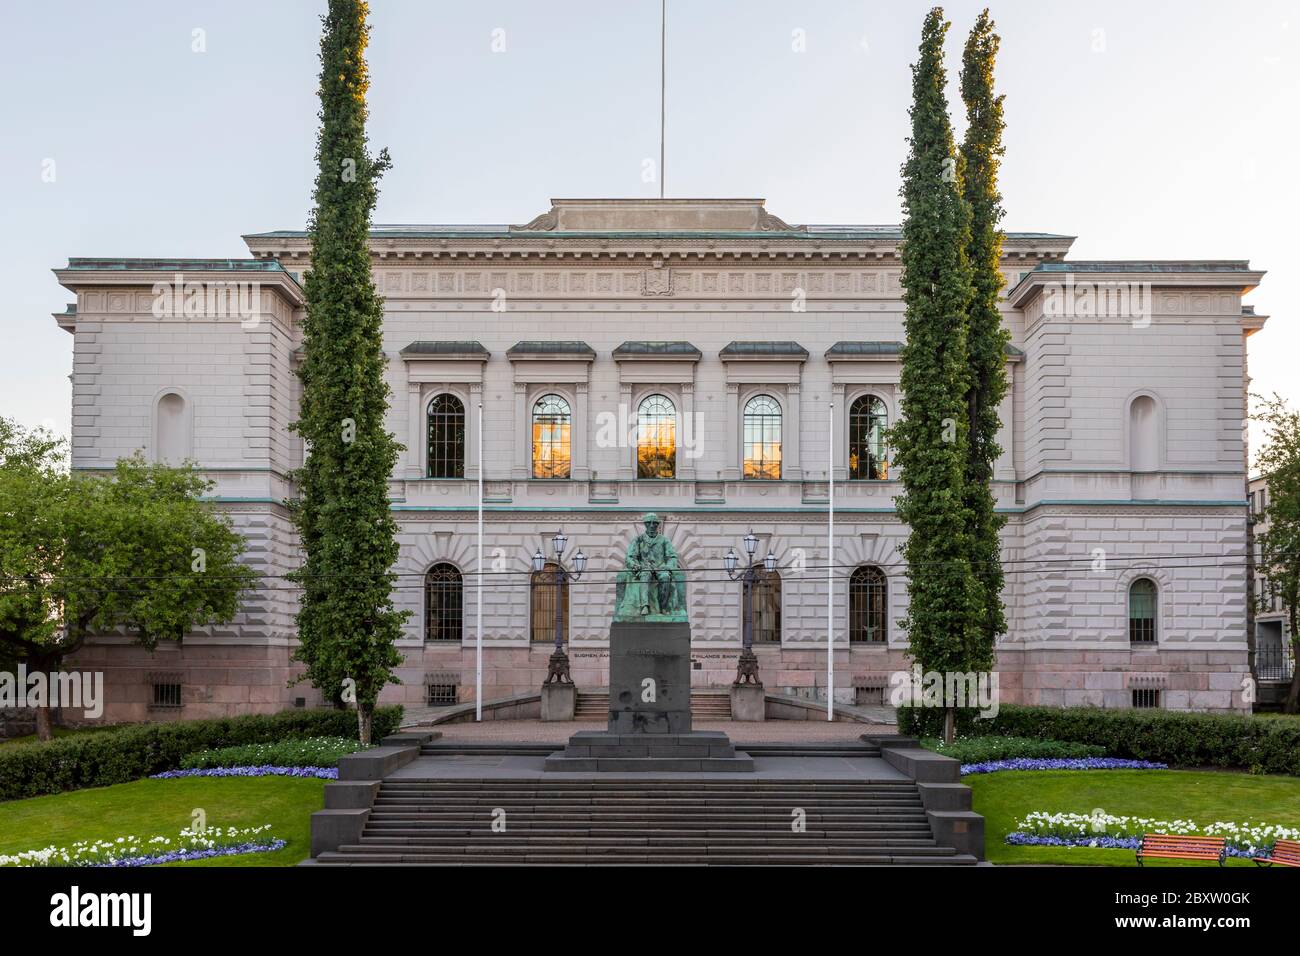 Die Bank of Finland ist die finnische Zentralbank. Es ist die viertälteste Zentralbank der Welt und befindet sich in einem historischen Gebäude in Helsinki, Finnland. Stockfoto